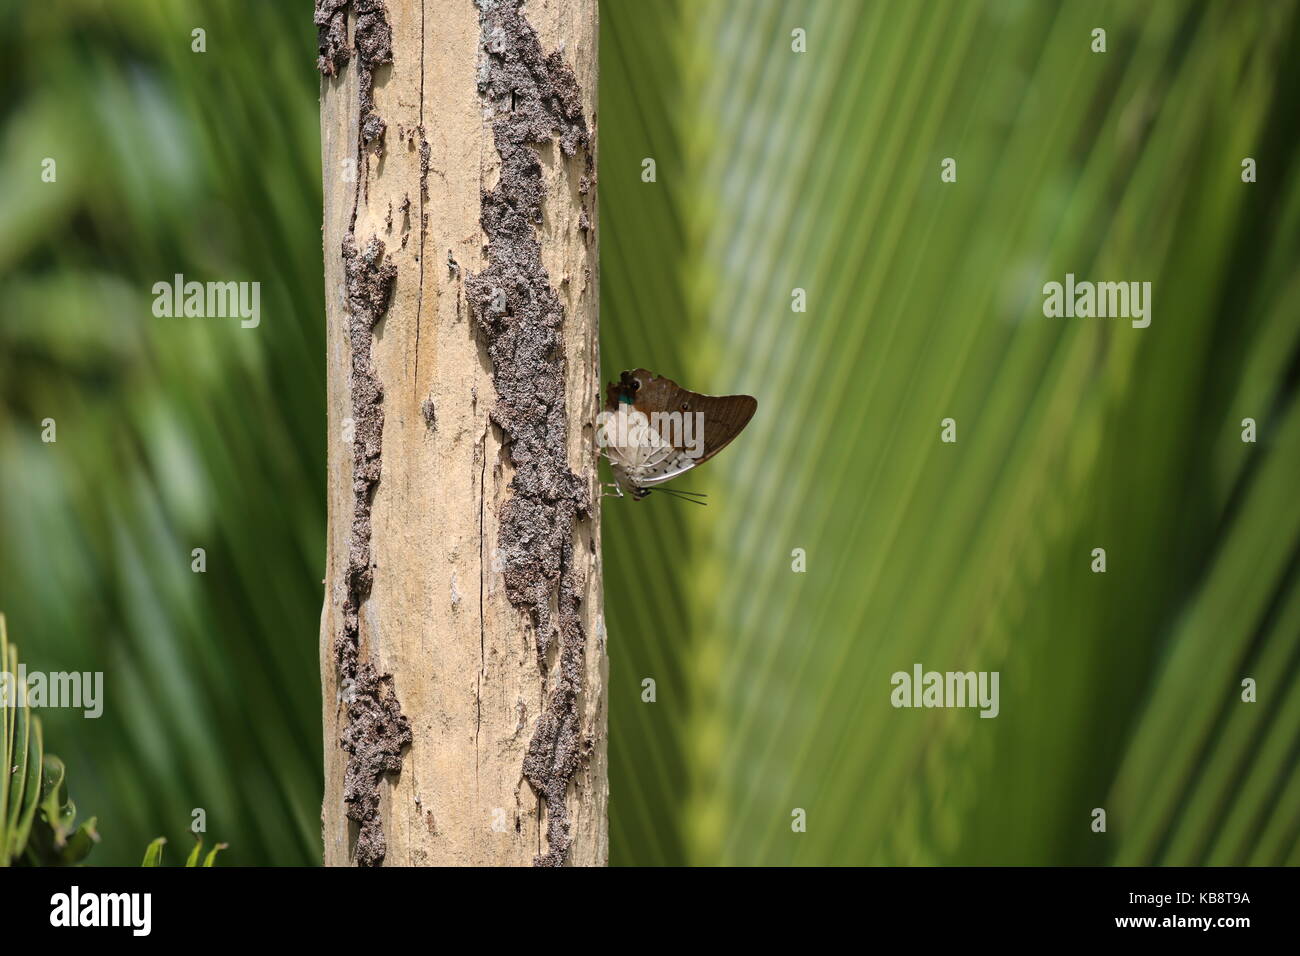 Schmetterling auf Baumstamm mit grünem Hintergrund - Mariposa de tronco de árbol con fondo verde Foto de stock